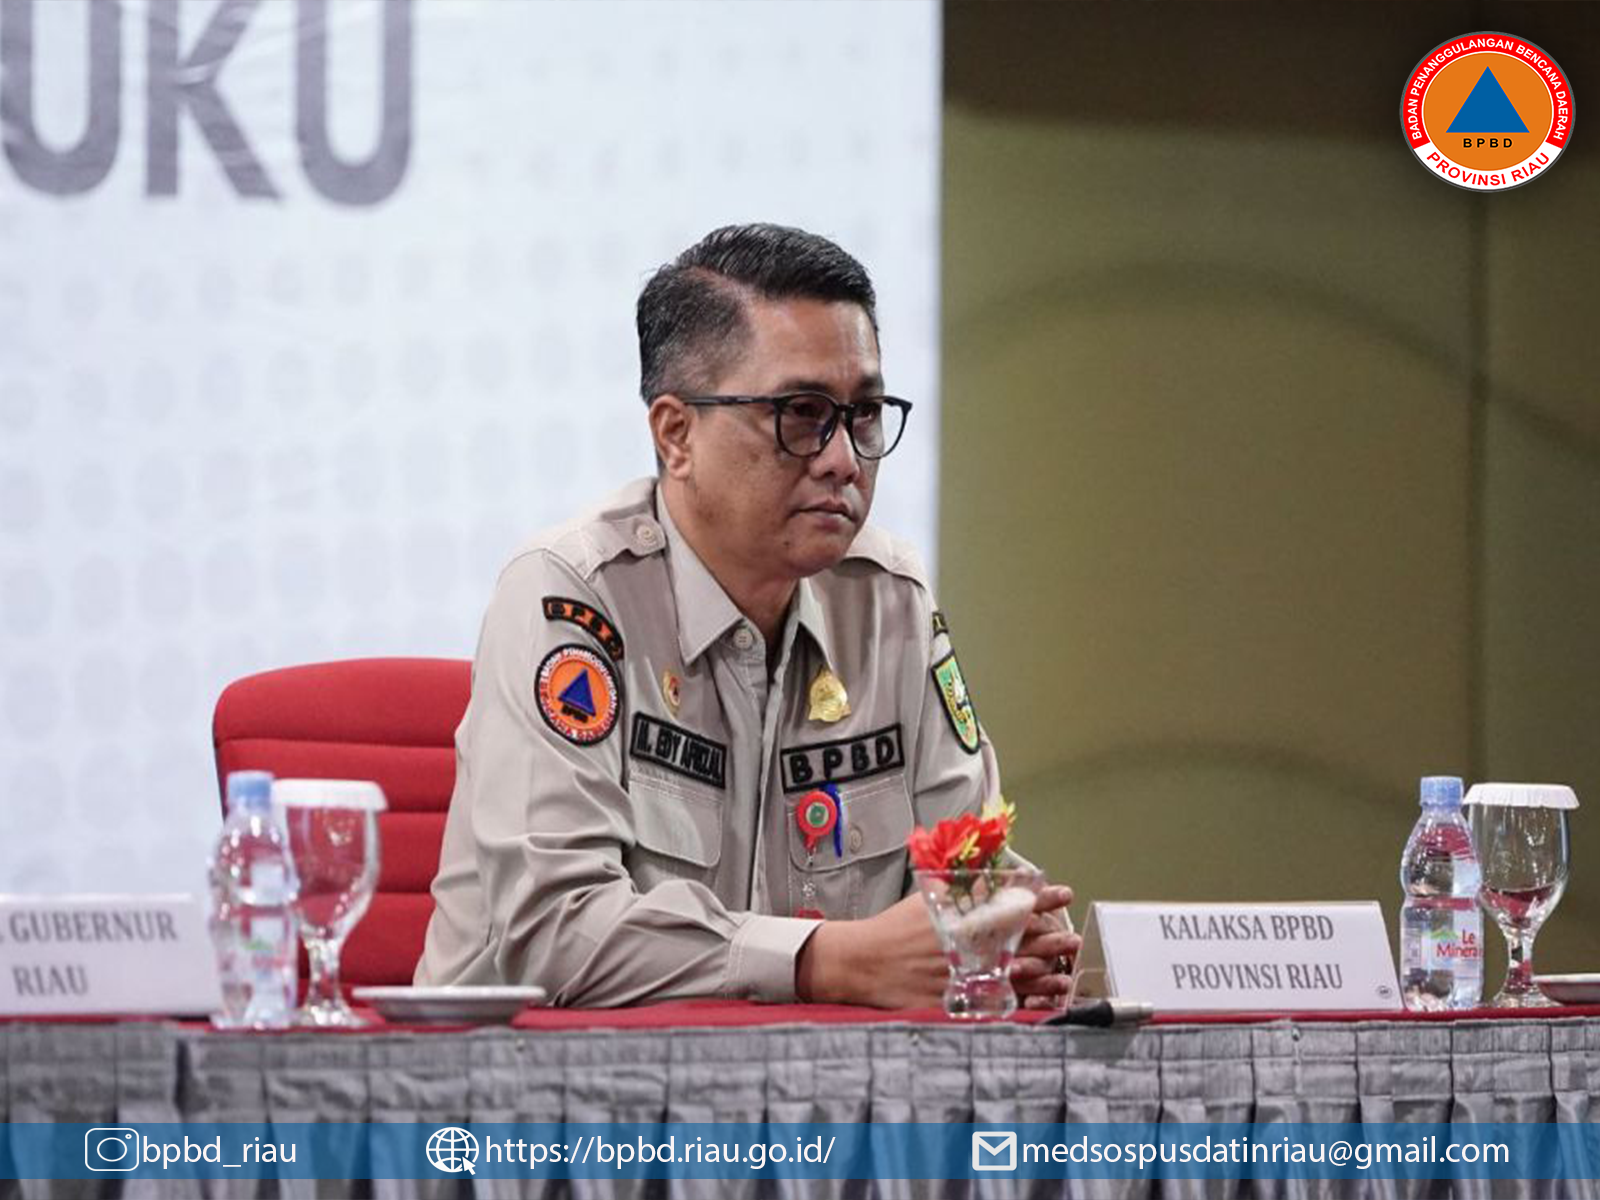 Sudah Diusulkan, Pemprov Riau Tunggu Bantuan Penanggulangan Karhutla dari Pemerintah Pusat